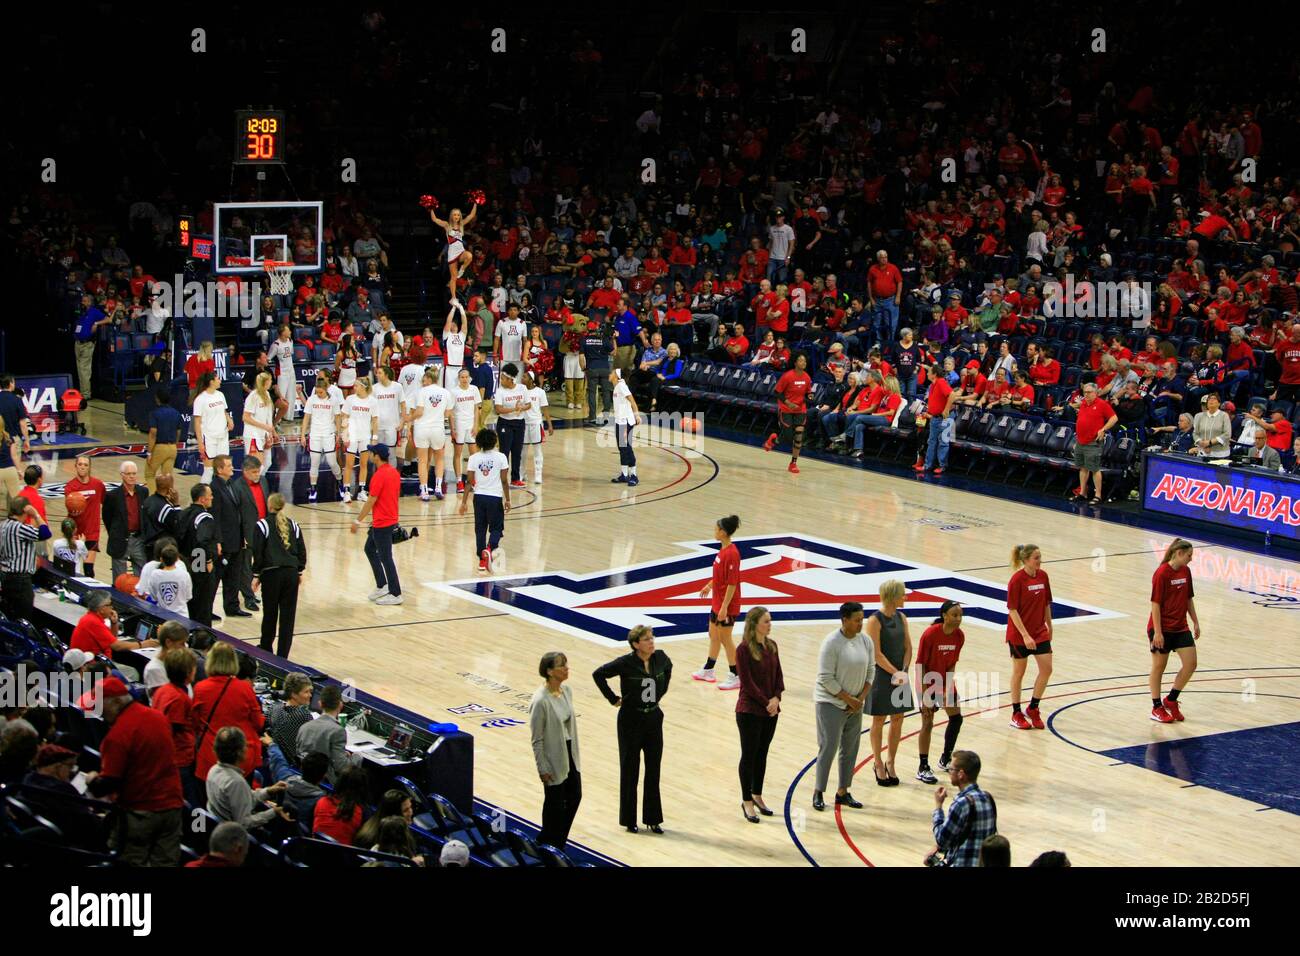 Arizona Vs Stanford Girls University jeu de basket-ball à l'arène de basket-ball UofA Mccale Memorial Center à Tucson AZ Banque D'Images